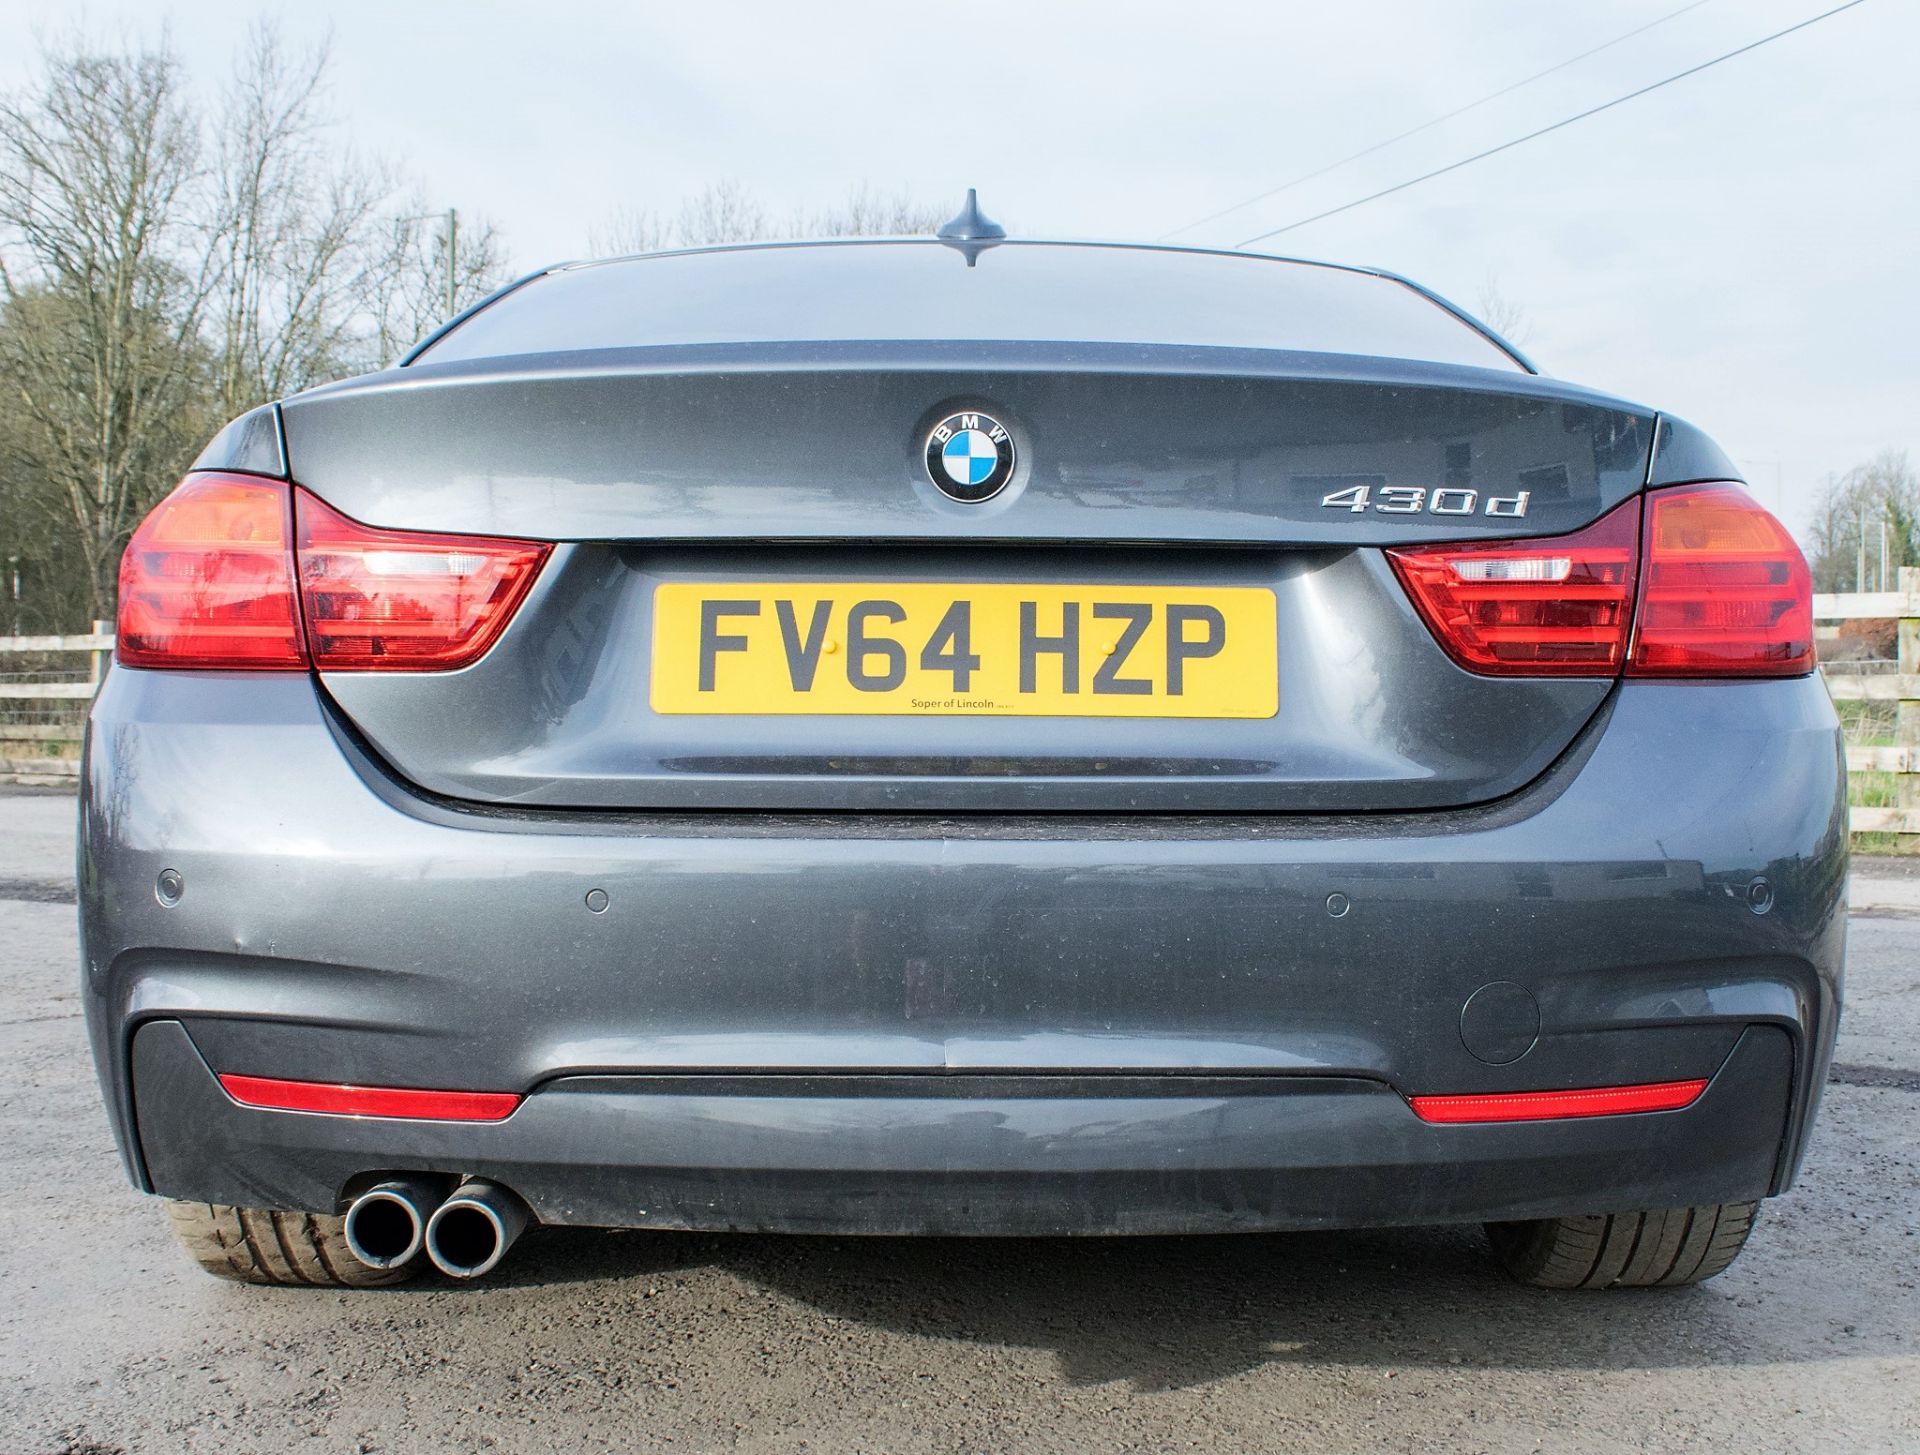 BMW 430D M sport automatic diesel car  Registration number: FV64 HZP Date of registration: 28/11/ - Image 6 of 24